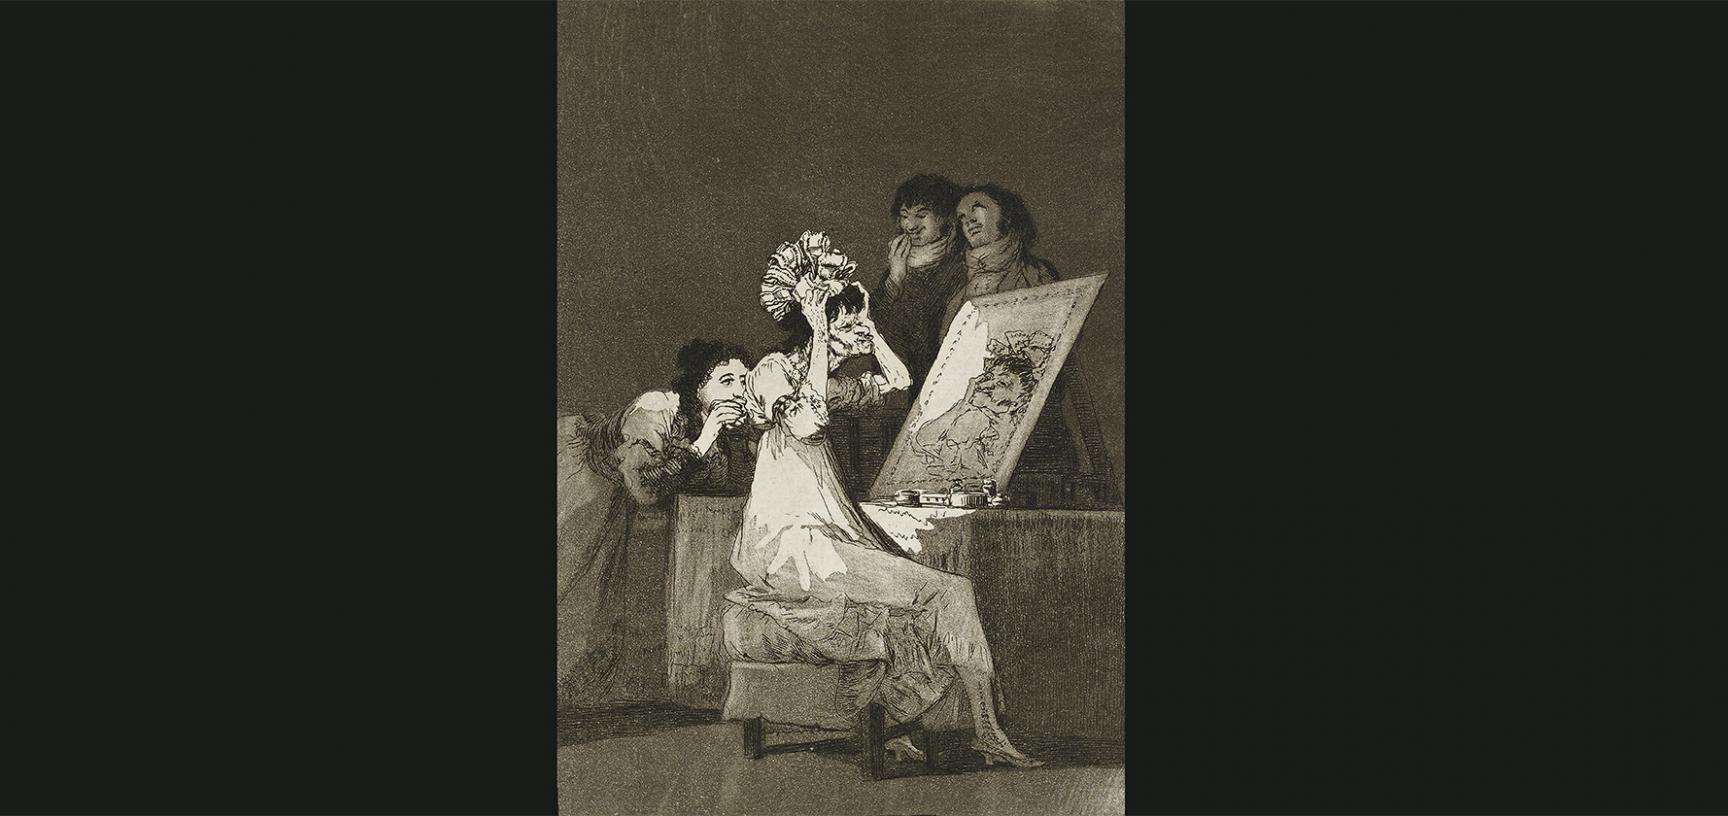 Hasta la muerte by Francisco José de Goya y Lucientes